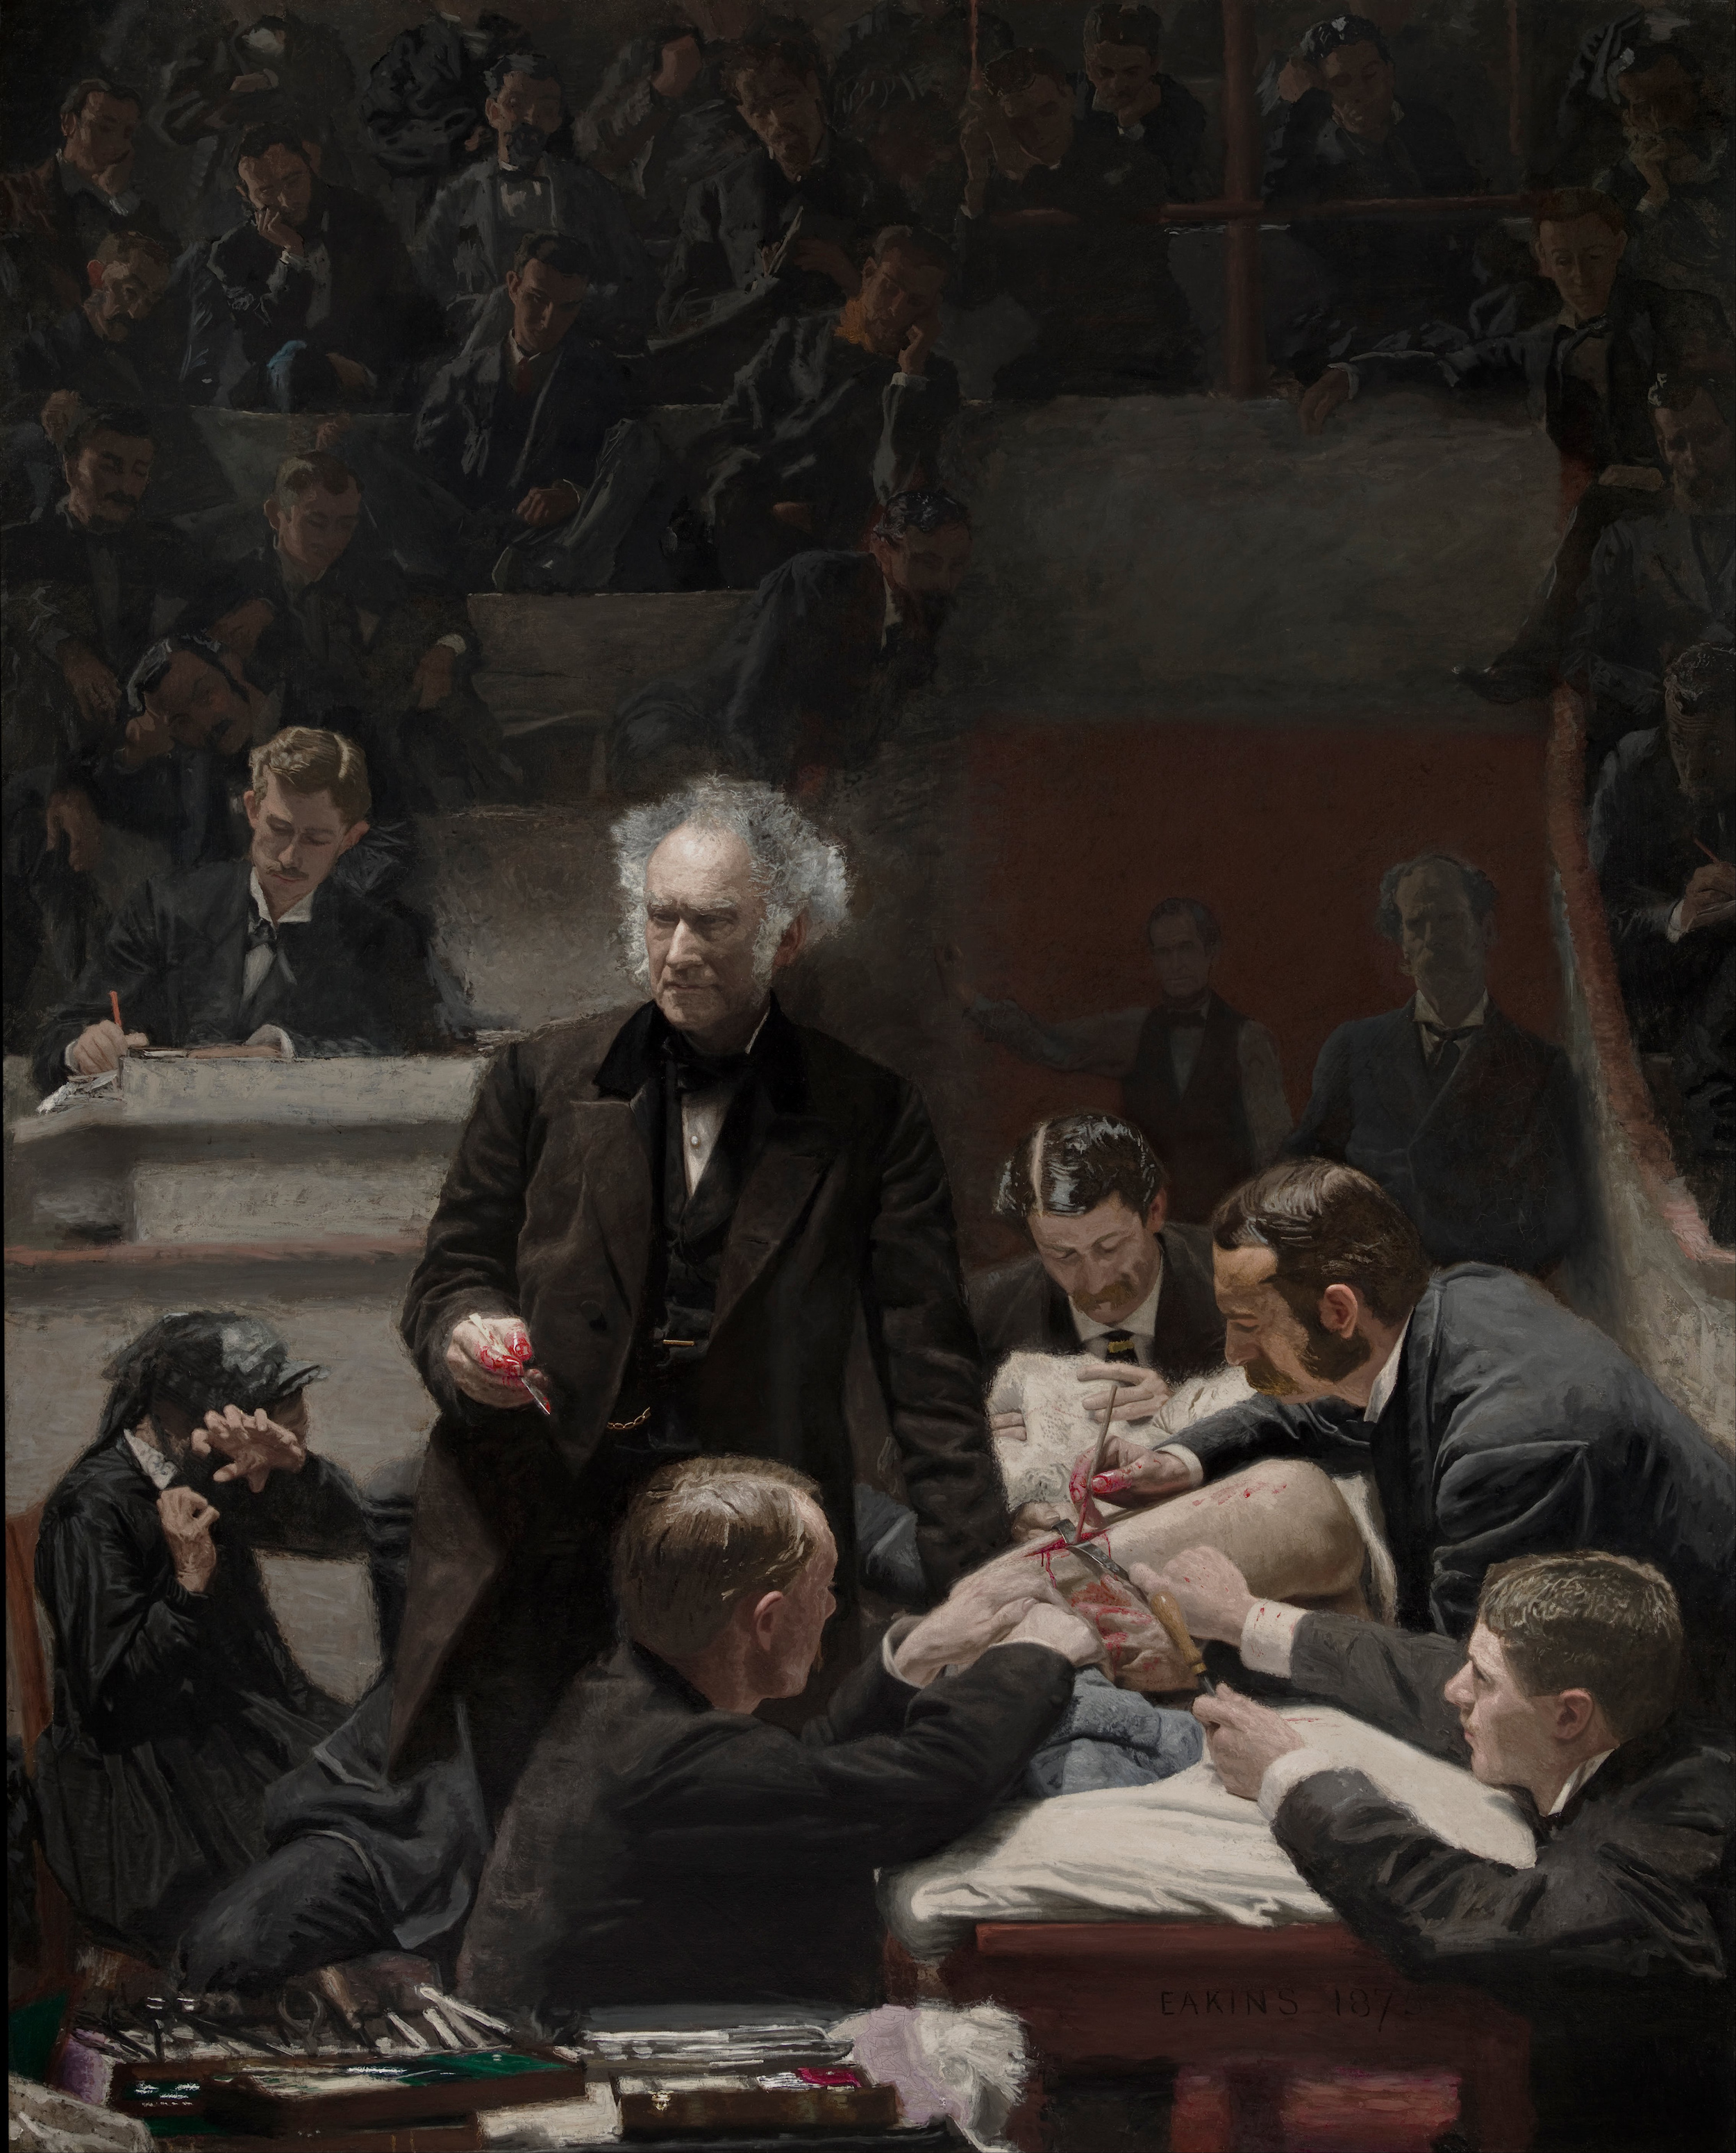 La clinica Gross by Thomas Eakins - 1872 - 244 x 198 cm 